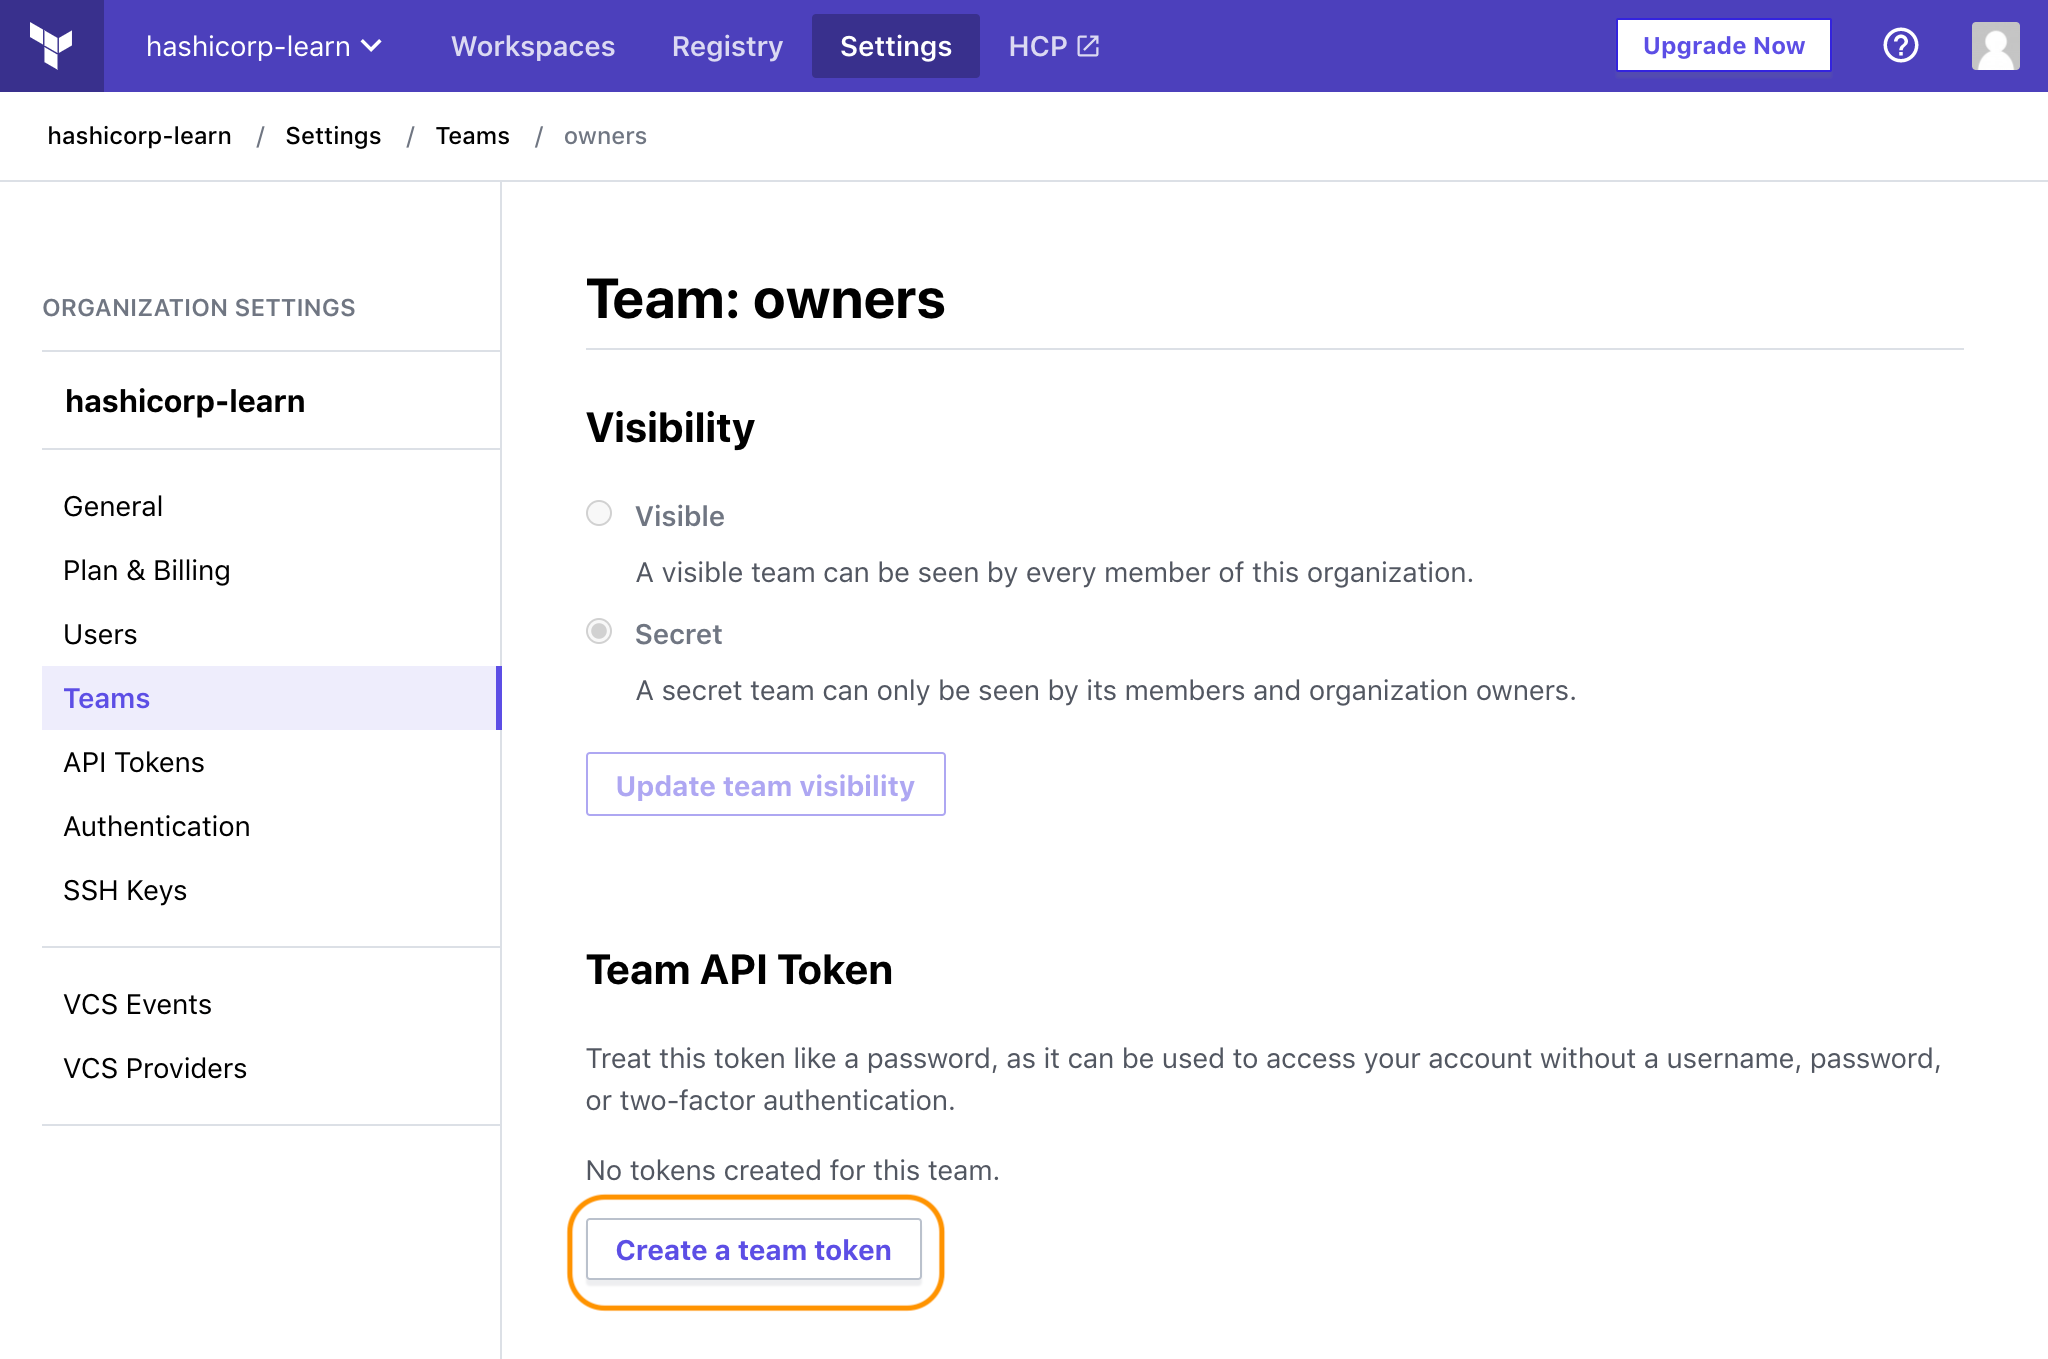 Create a Team API token